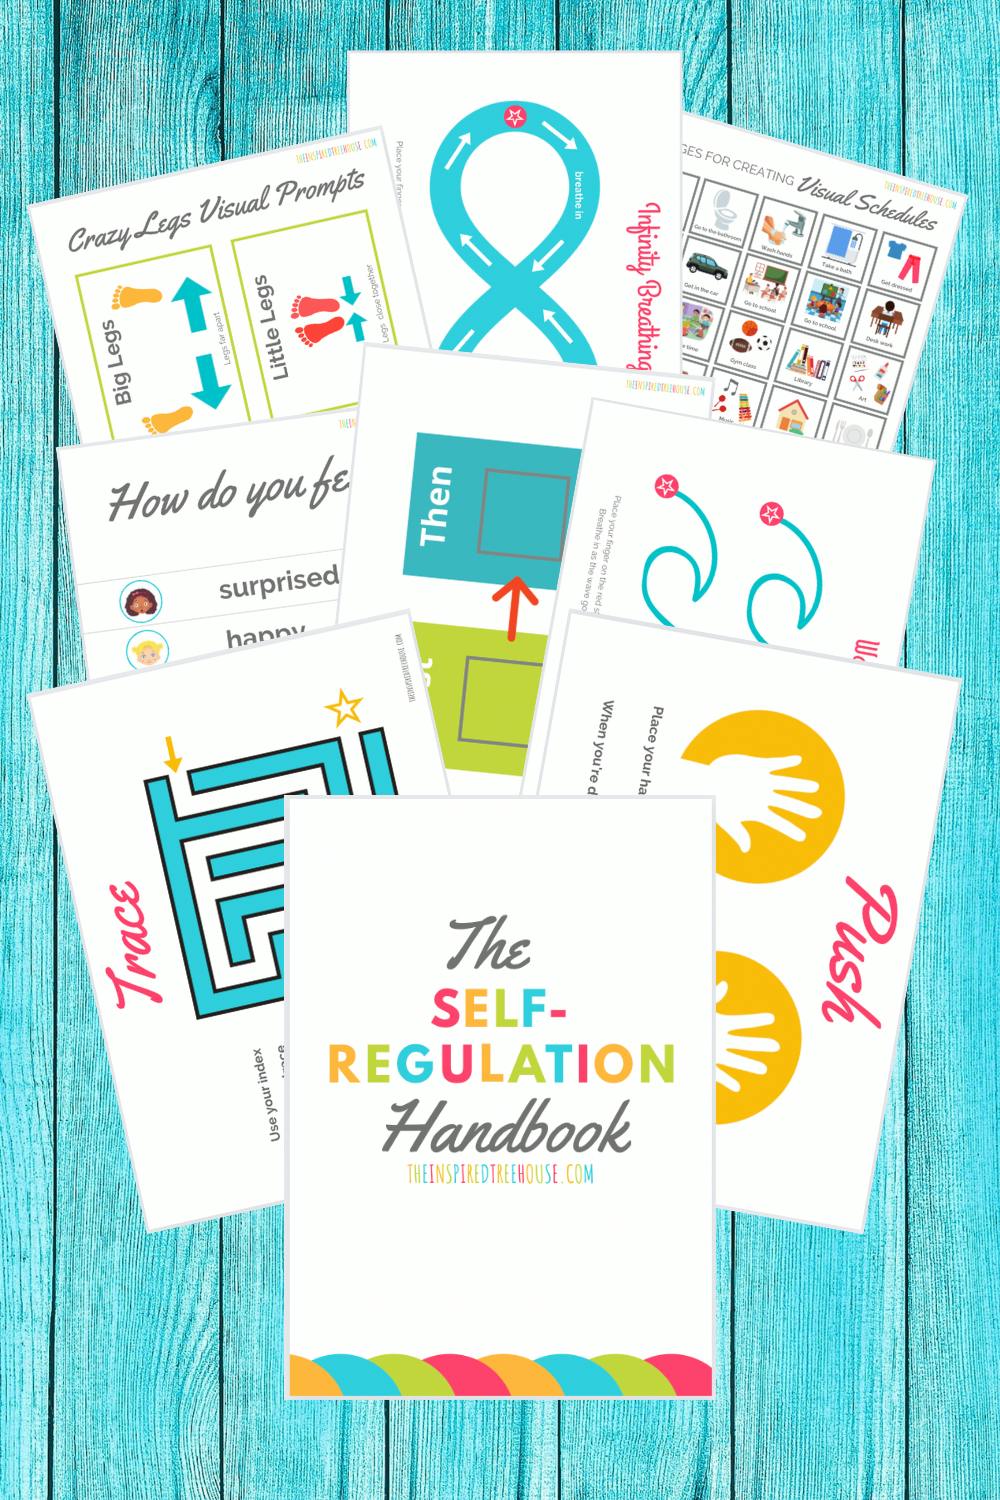 The Self-Regulation Handbook